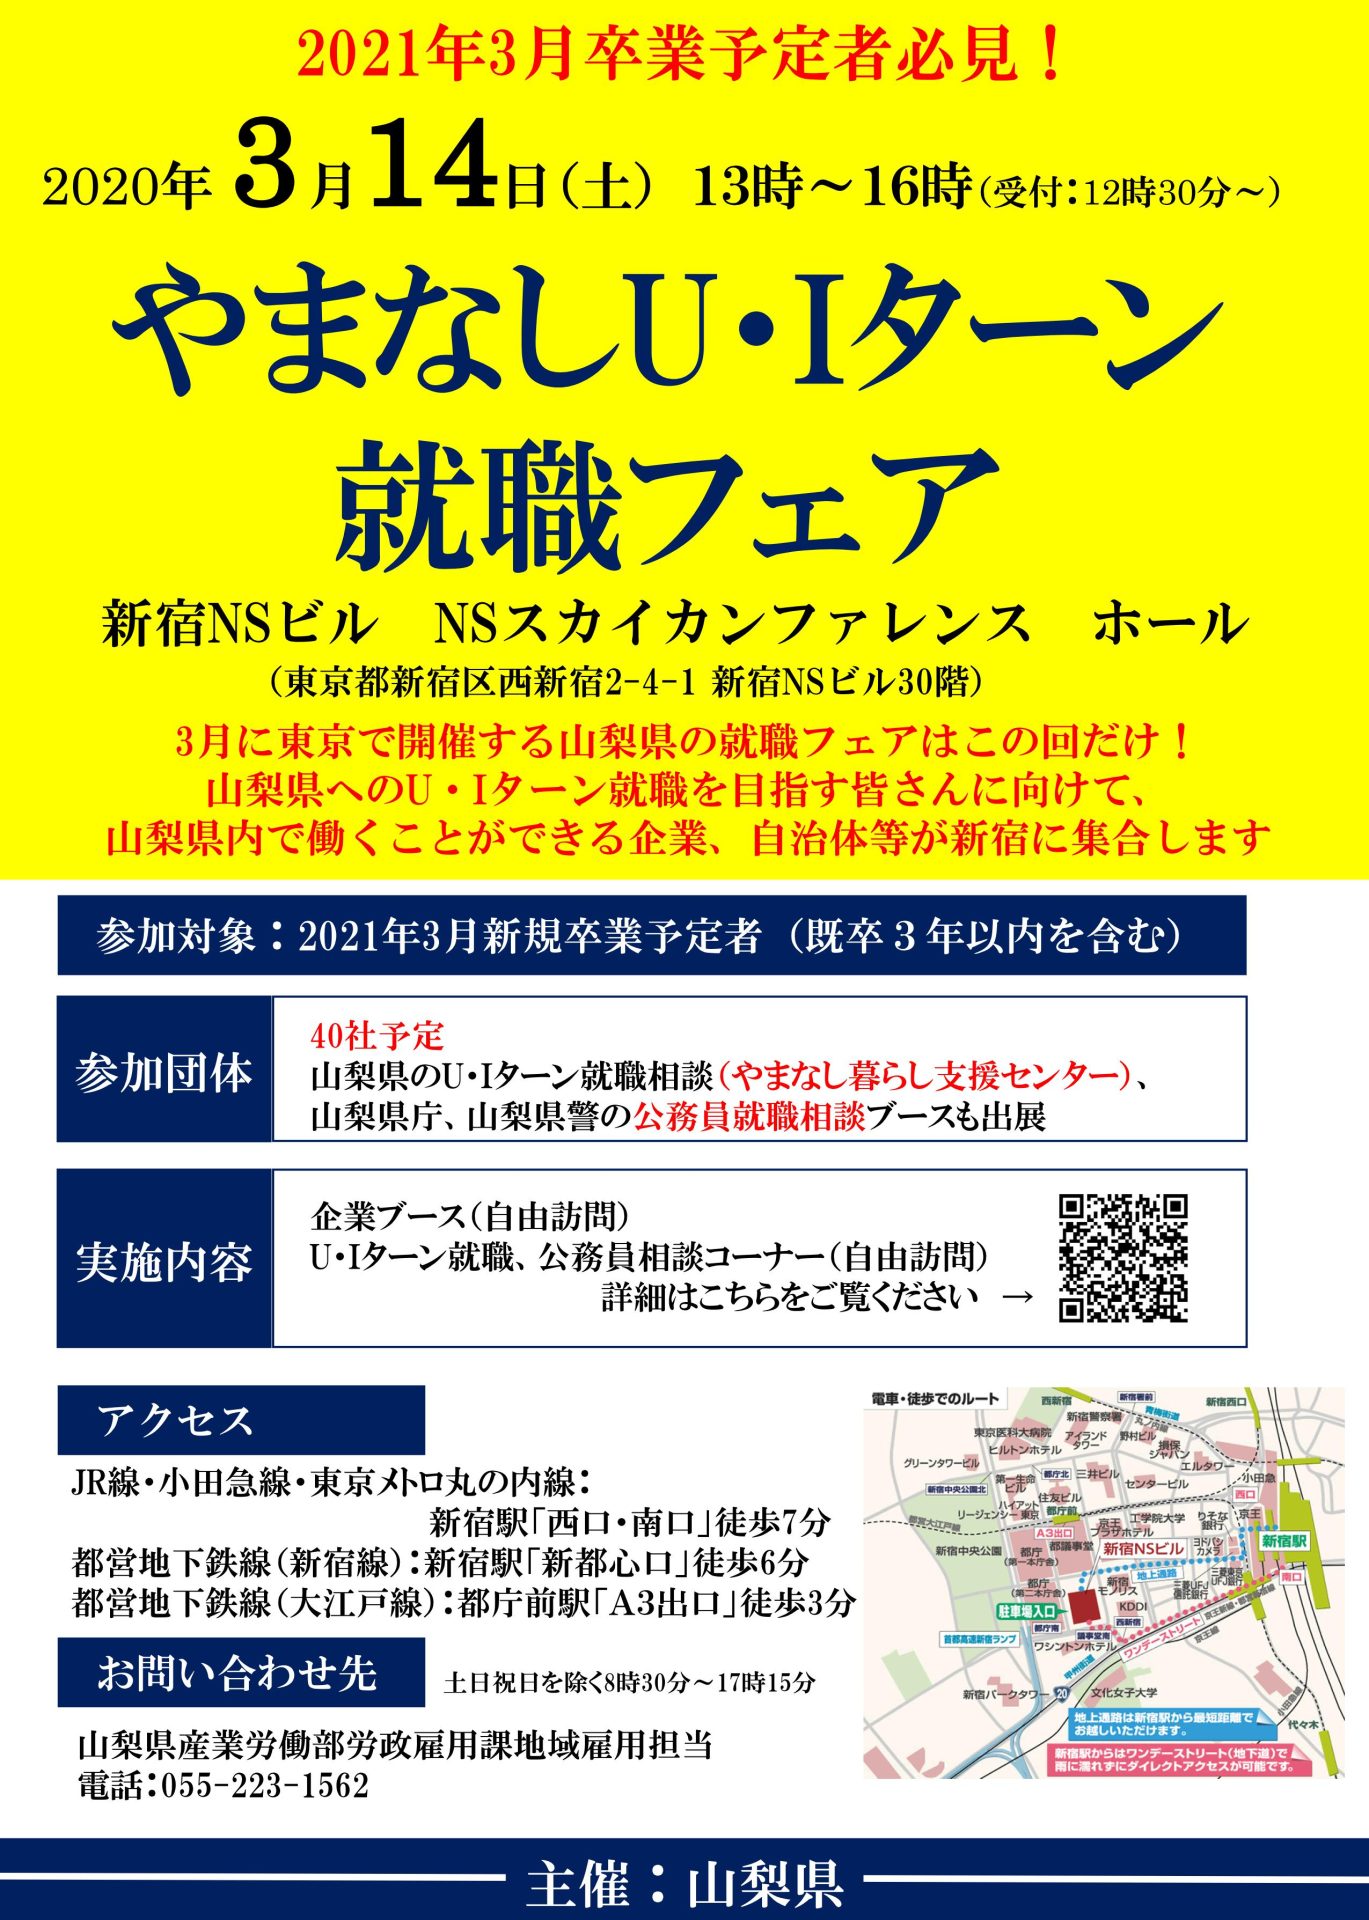 【開催中止】やまなしU・Iターン就職フェア（新宿開催） | 移住関連イベント情報